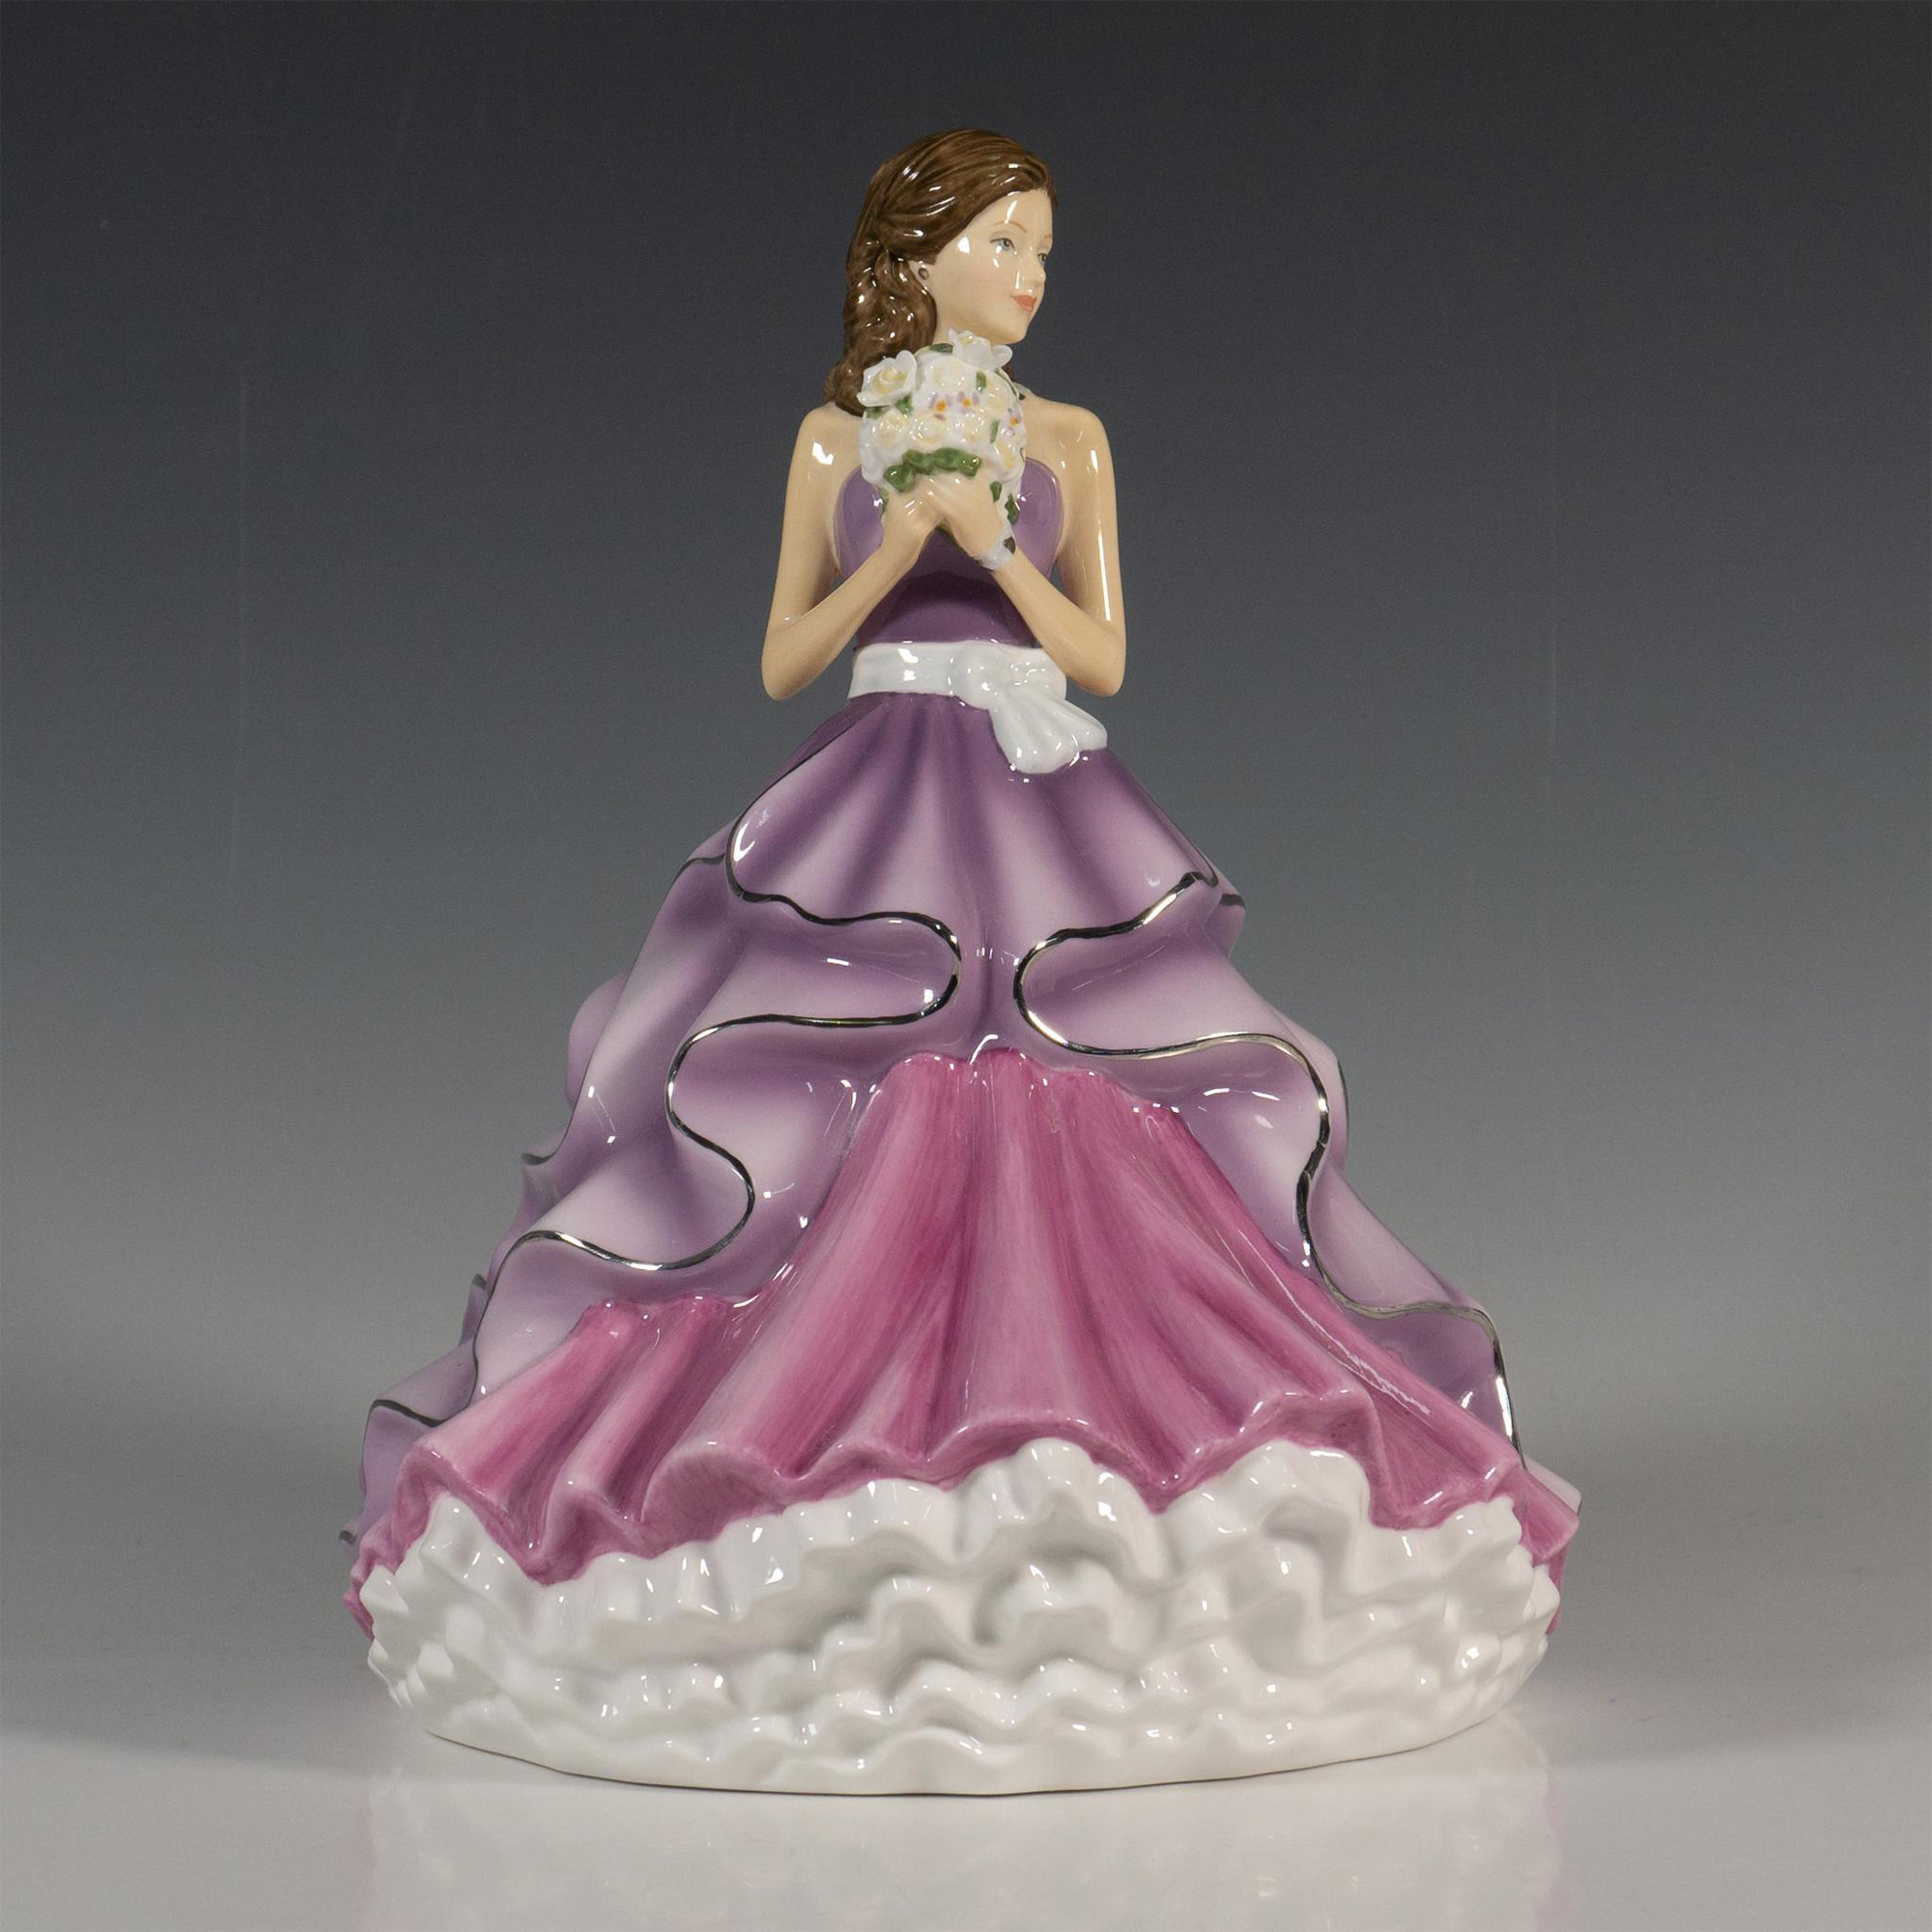 Violet HN5919 - Royal Doulton Figurine - Image 2 of 5